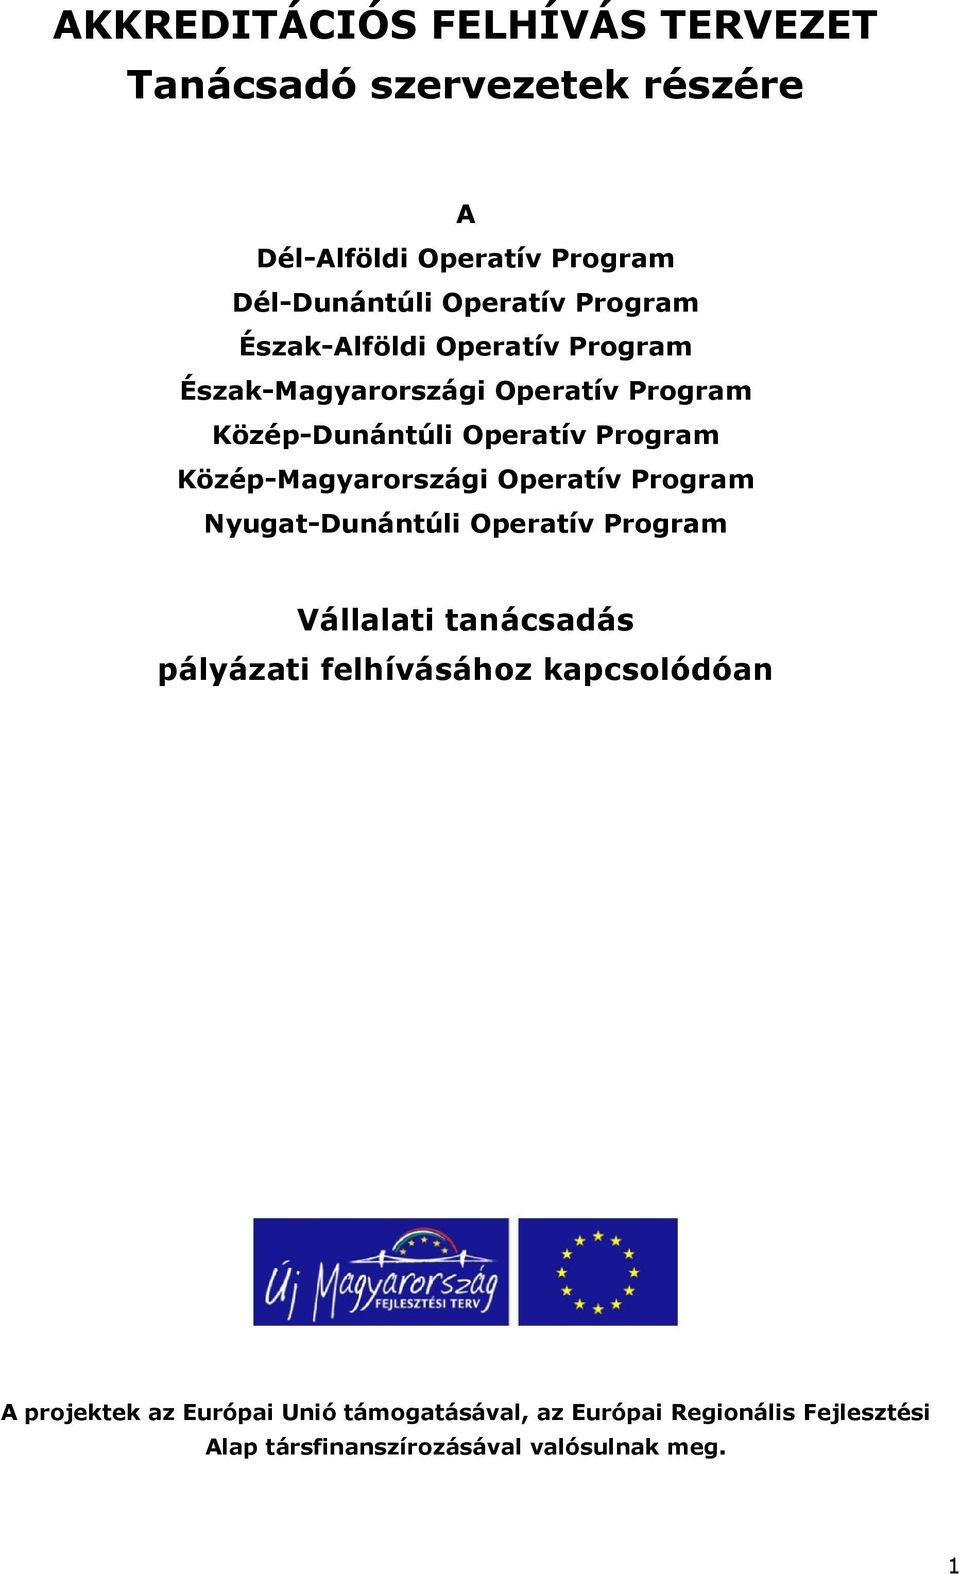 Közép-Magyarországi Operatív Program Nyugat-Dunántúli Operatív Program Vállalati tanácsadás pályázati felhívásához